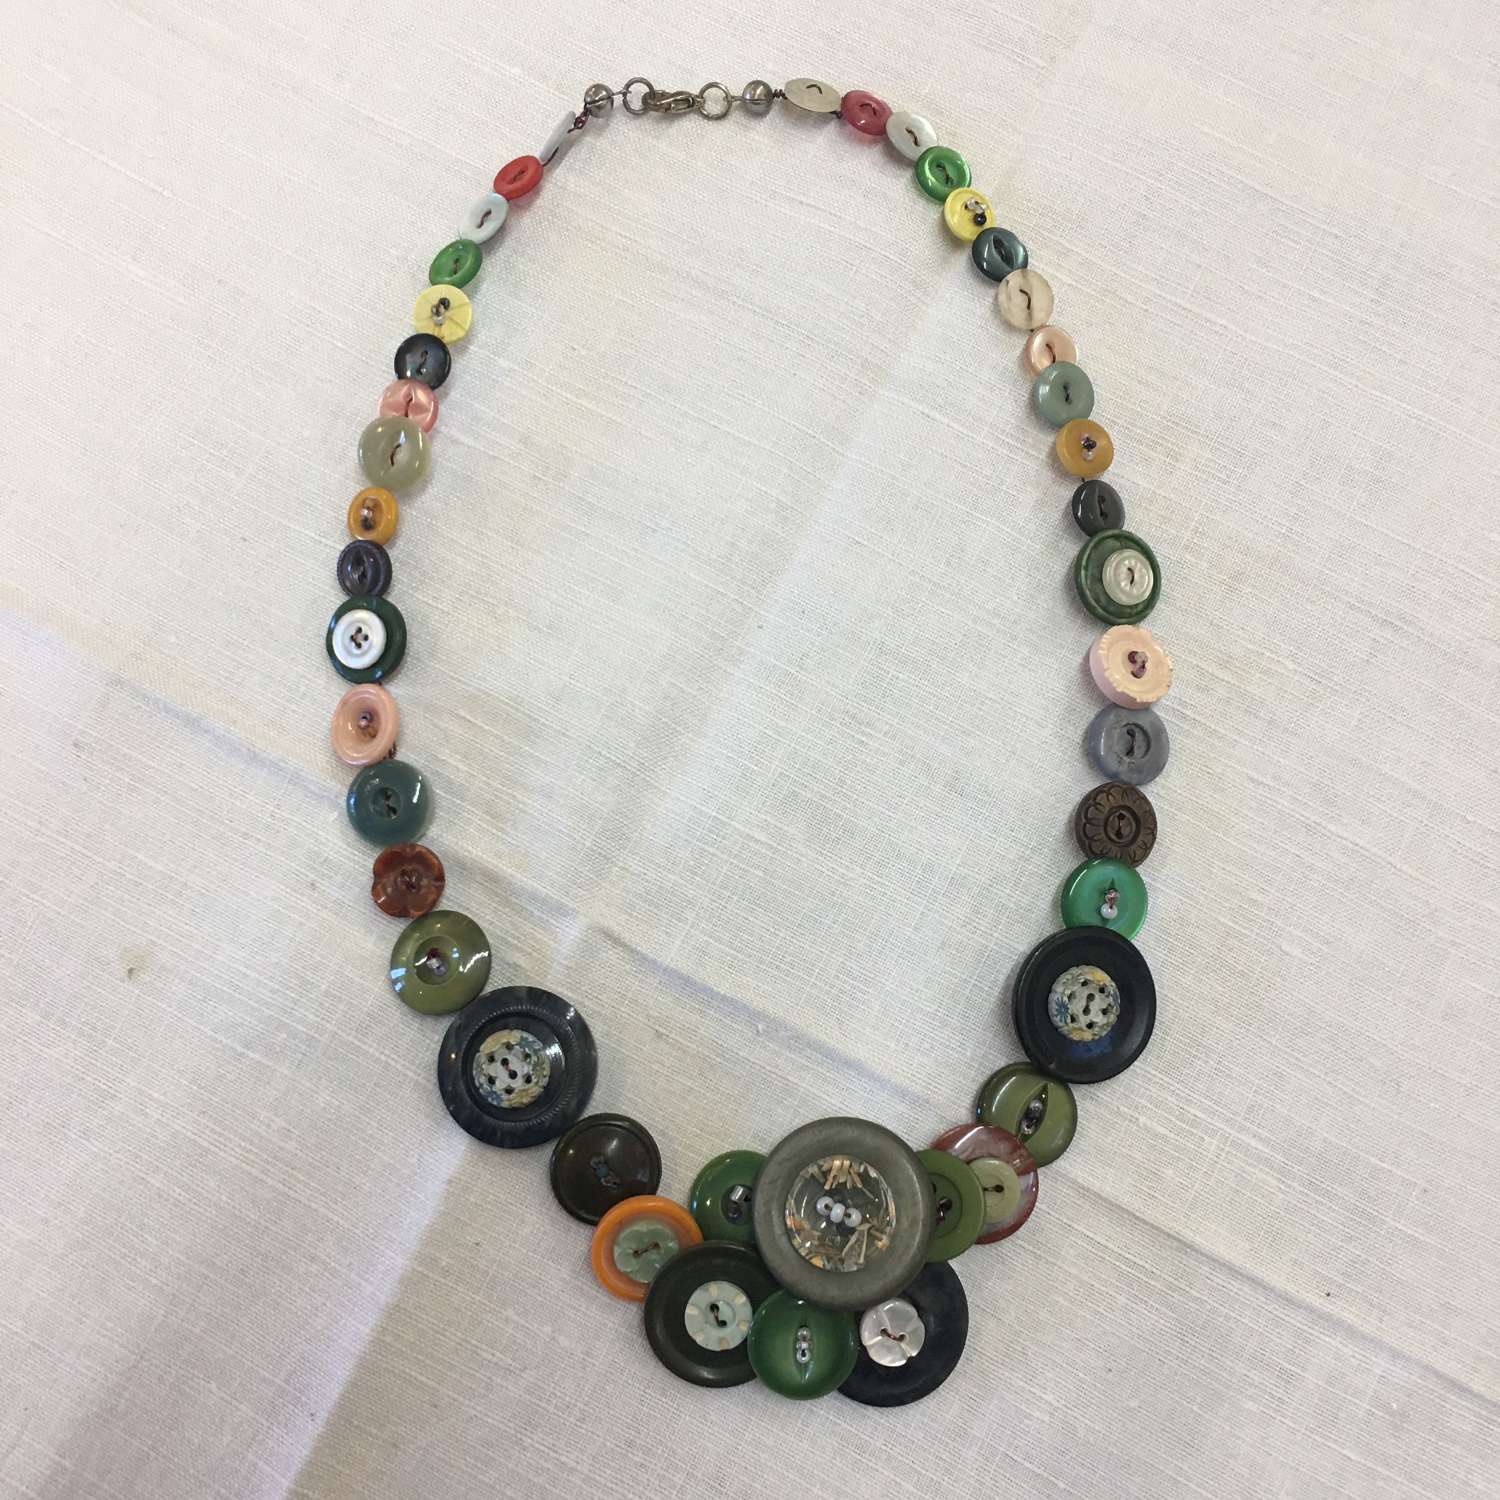 Vintage button necklace